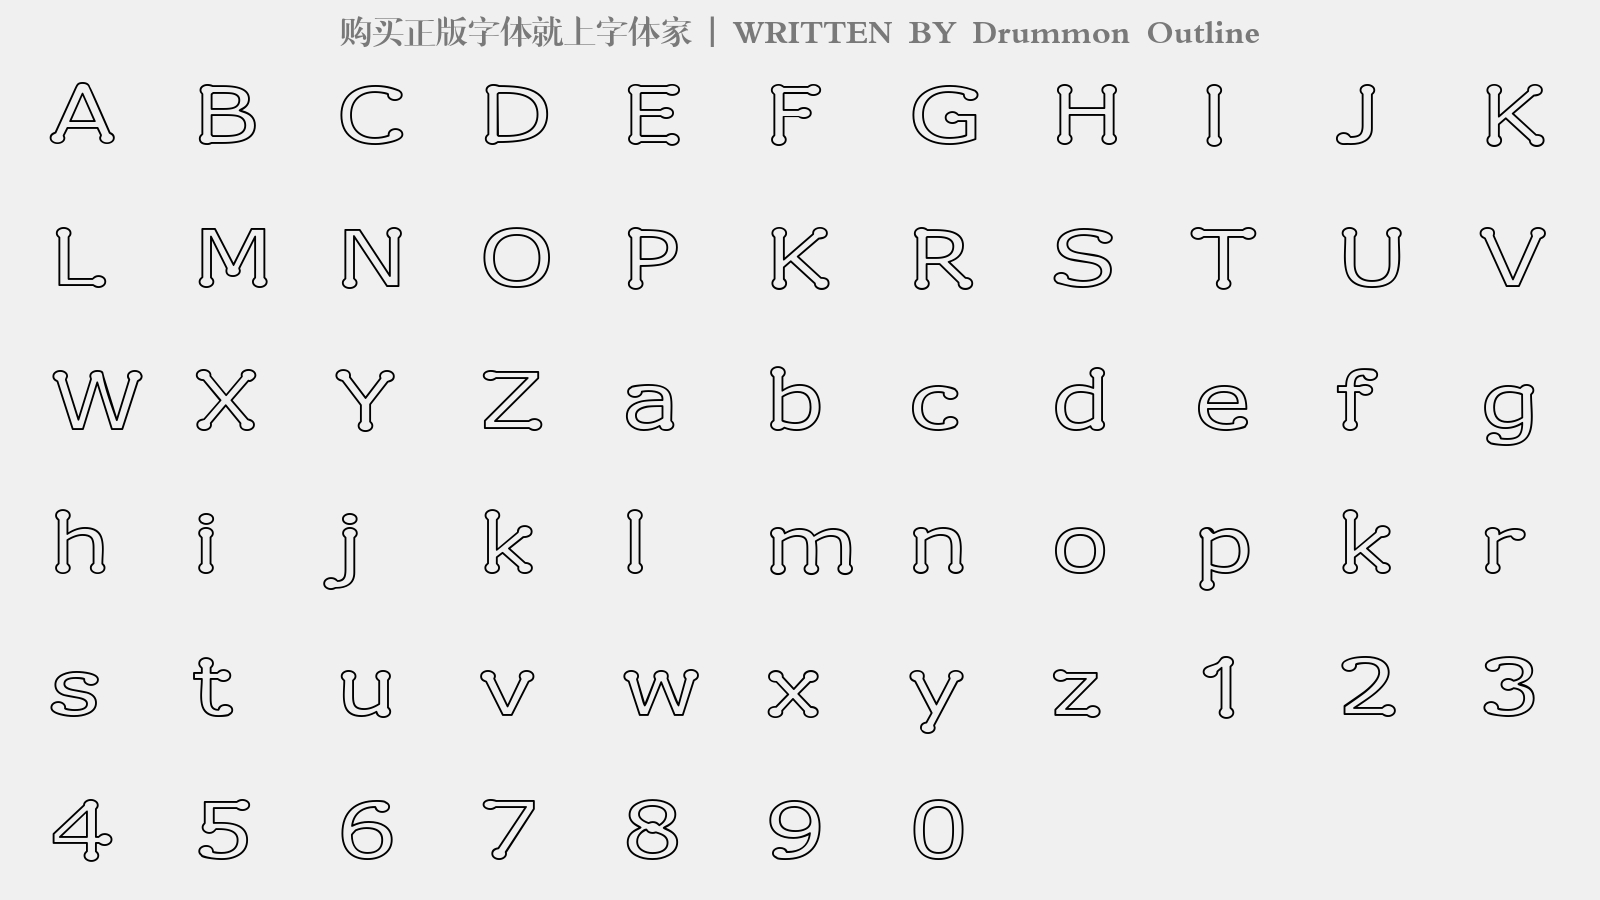 Drummon Outline - 大写字母/小写字母/数字